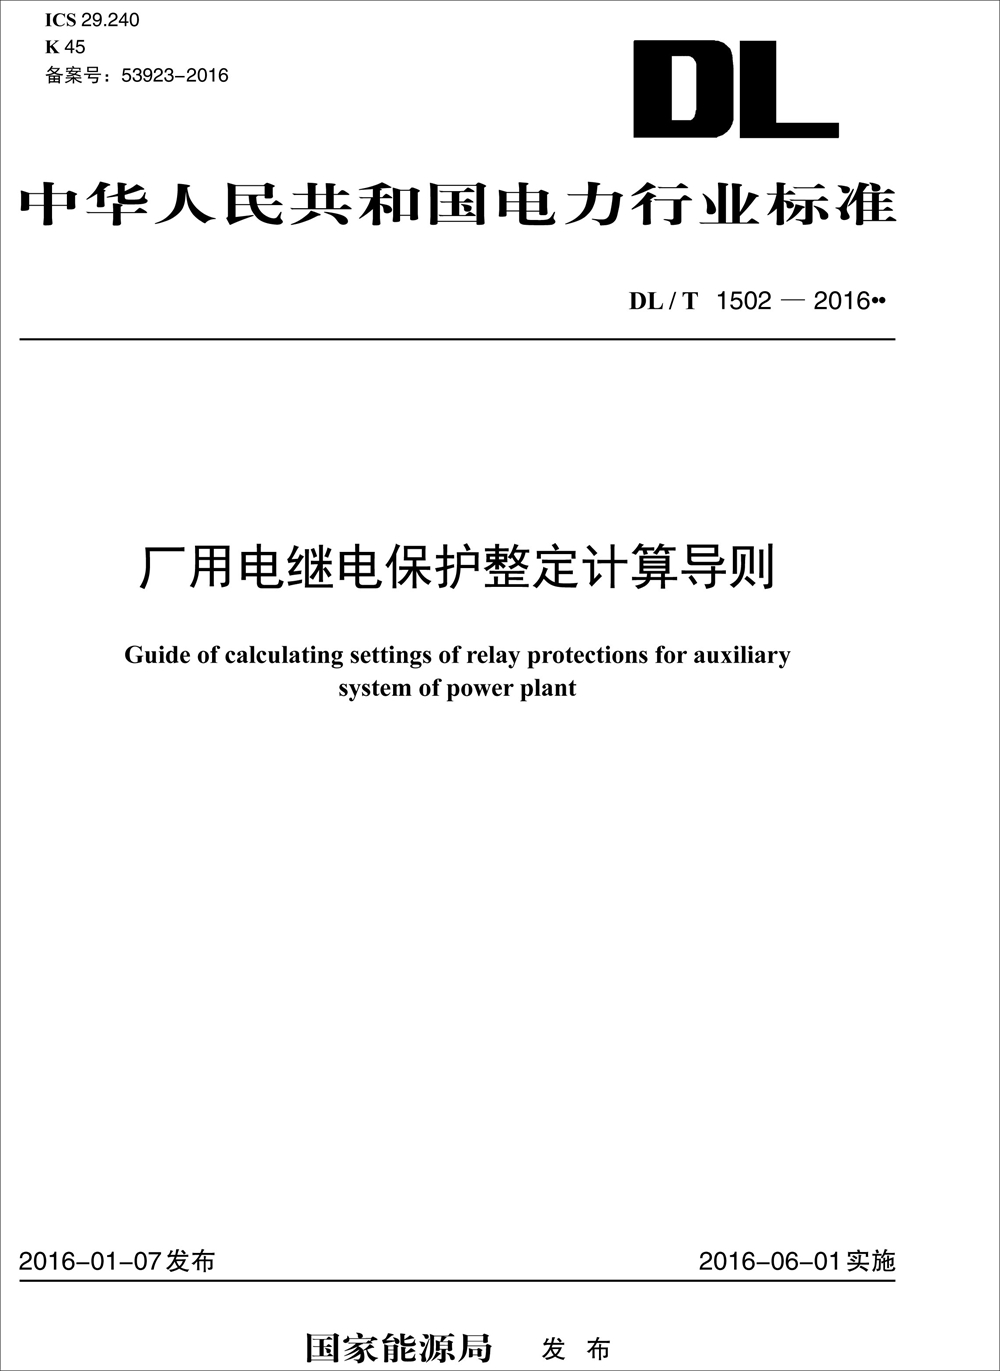 厂用电继电保护整定计算导则（DL/T 1502—2016） pdf格式下载